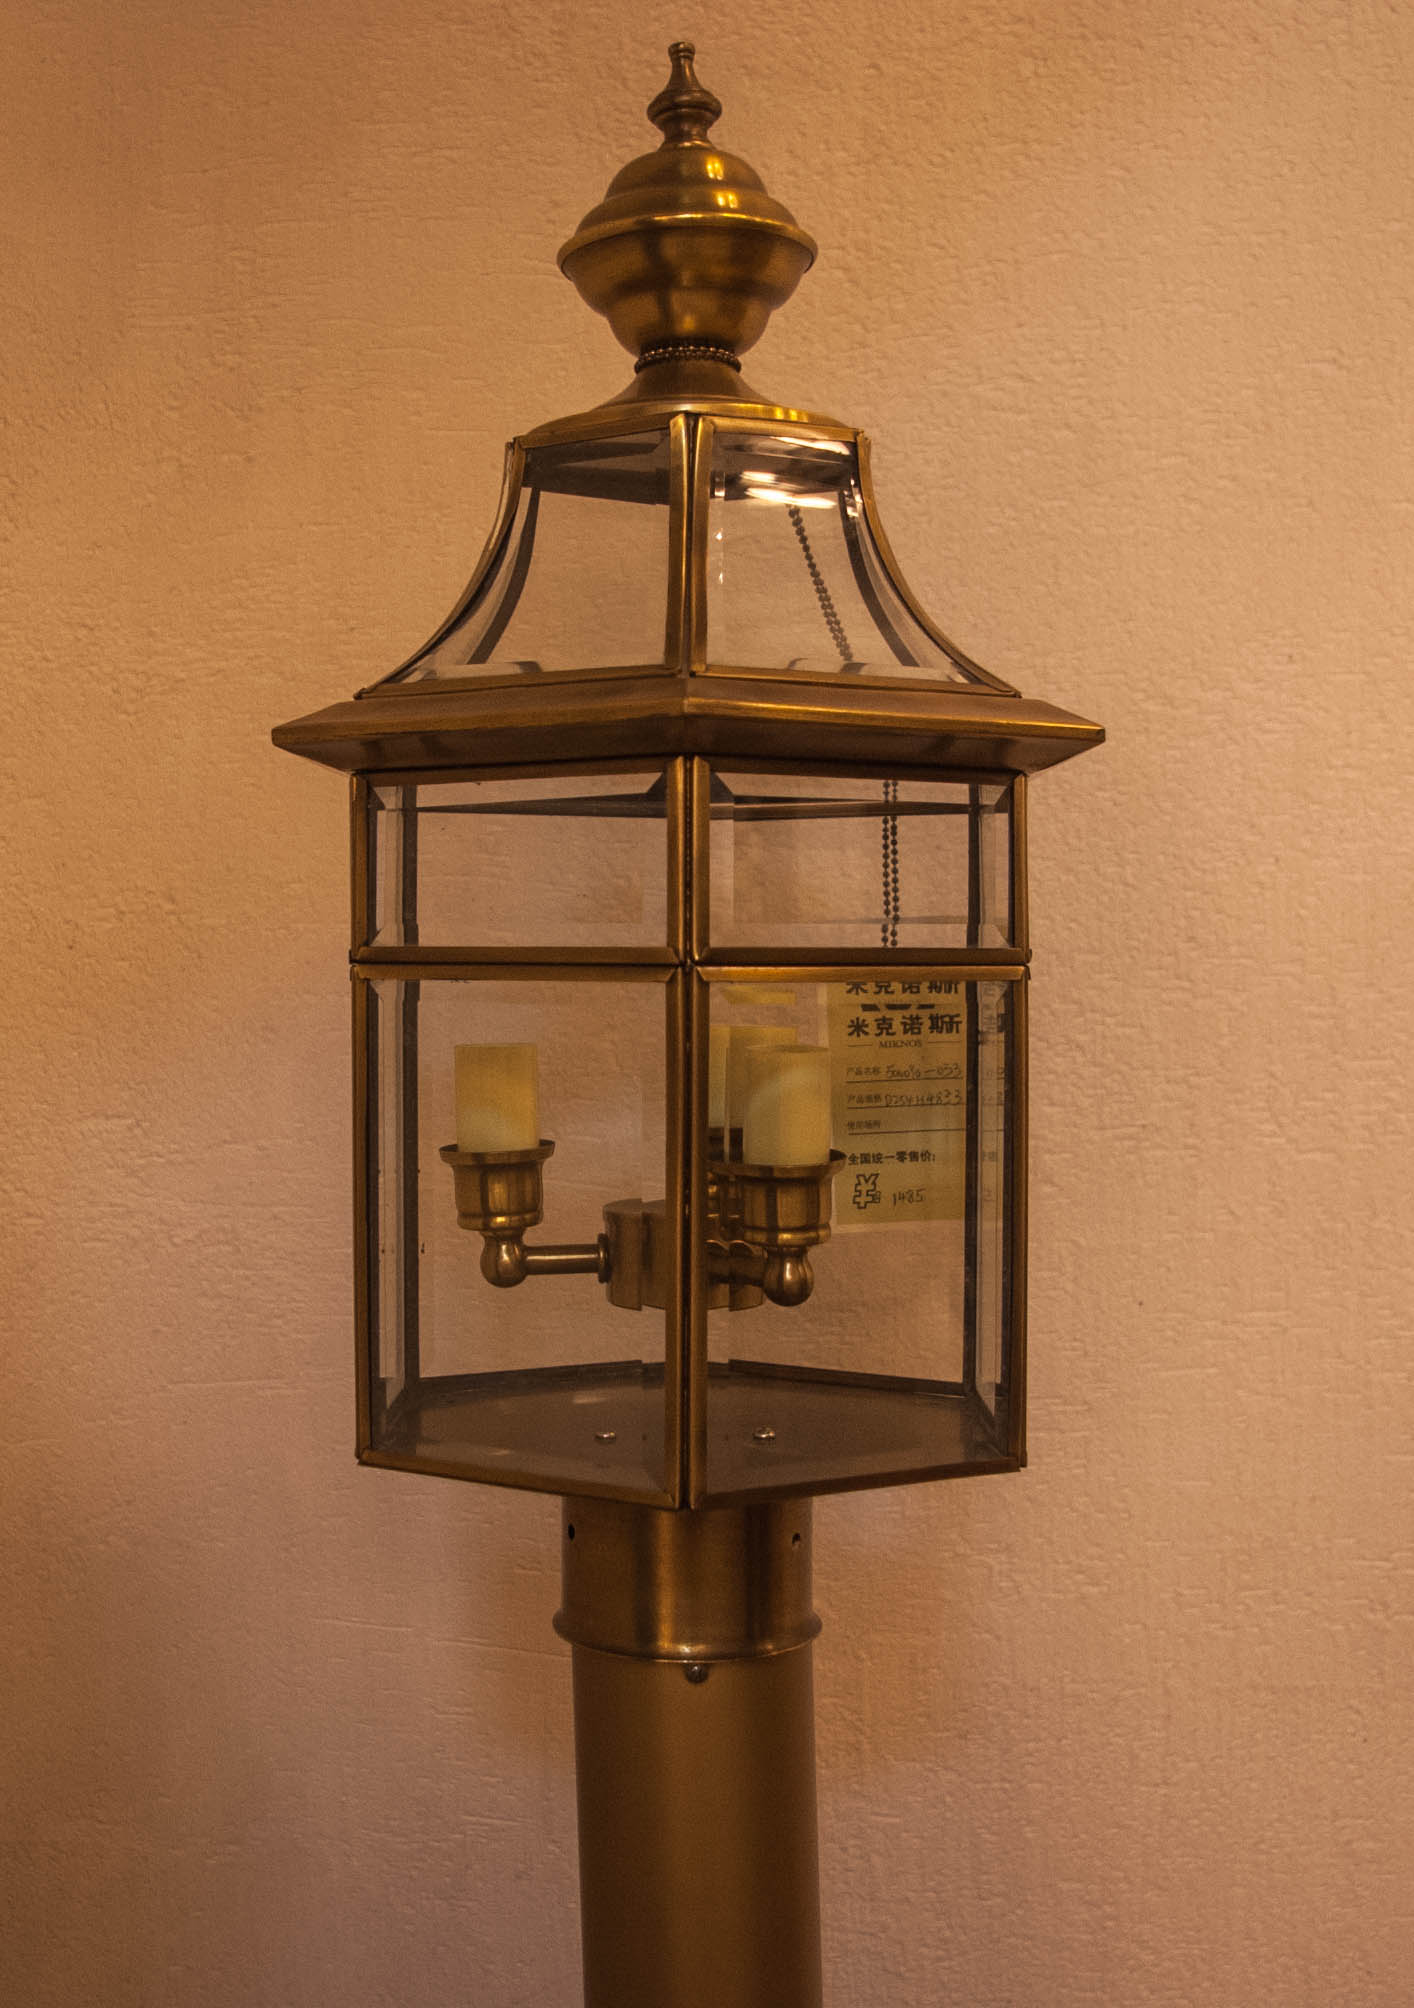 Wall lamp